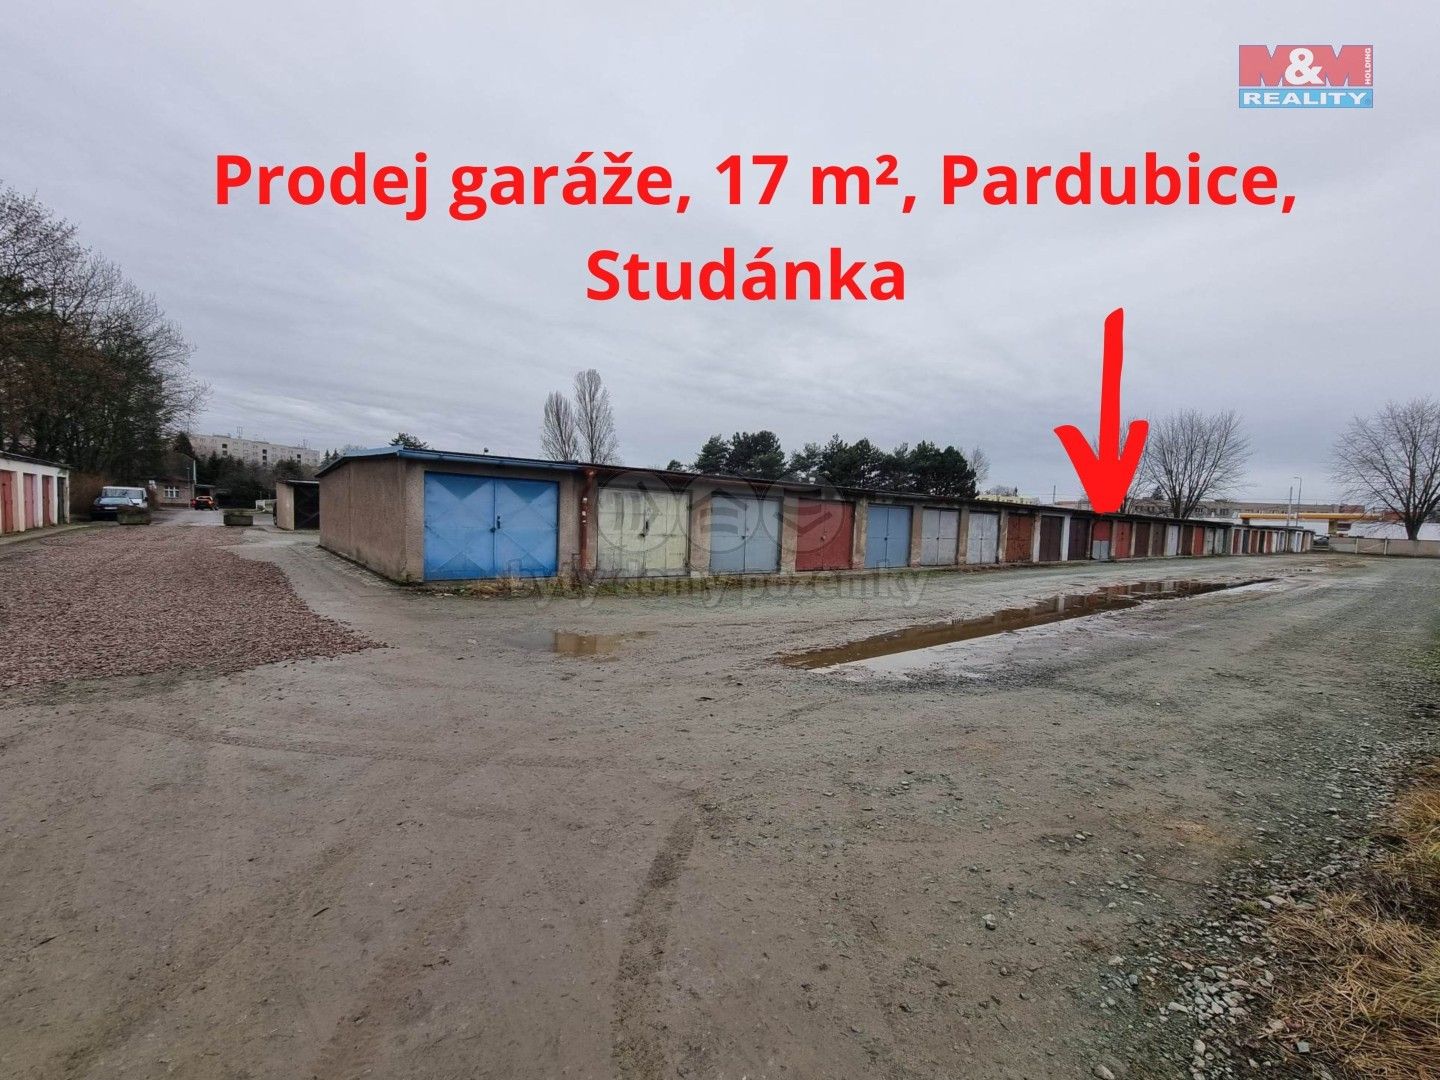 Ostatní, Studánka, Pardubice, 17 m²